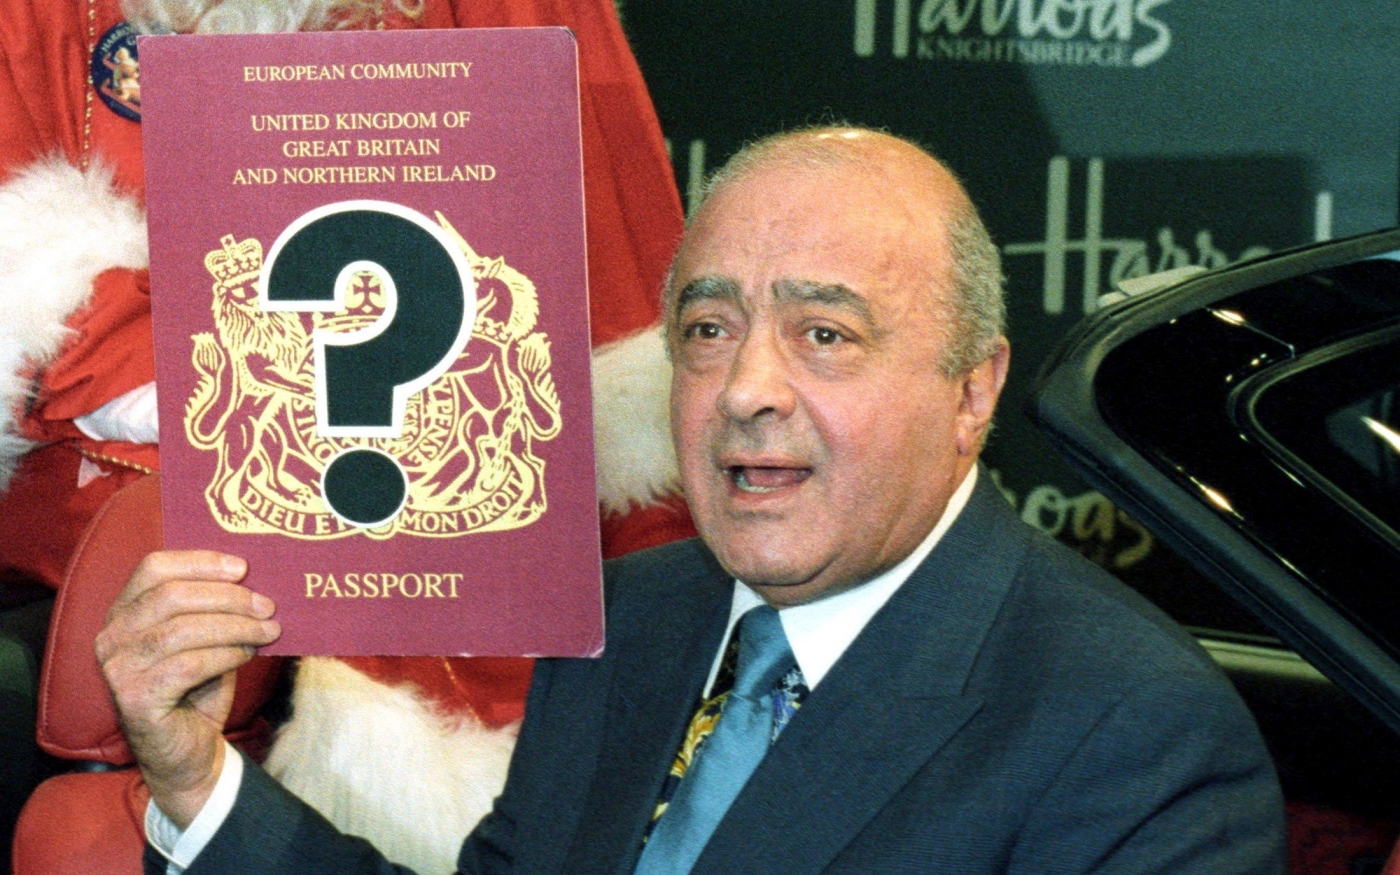 Le milliardaire Mohamed al-Fayed montre la couverture grand format d’un passeport britannique lors d’une conférence de presse à Londres, le 13 novembre 1996 (Reuters)